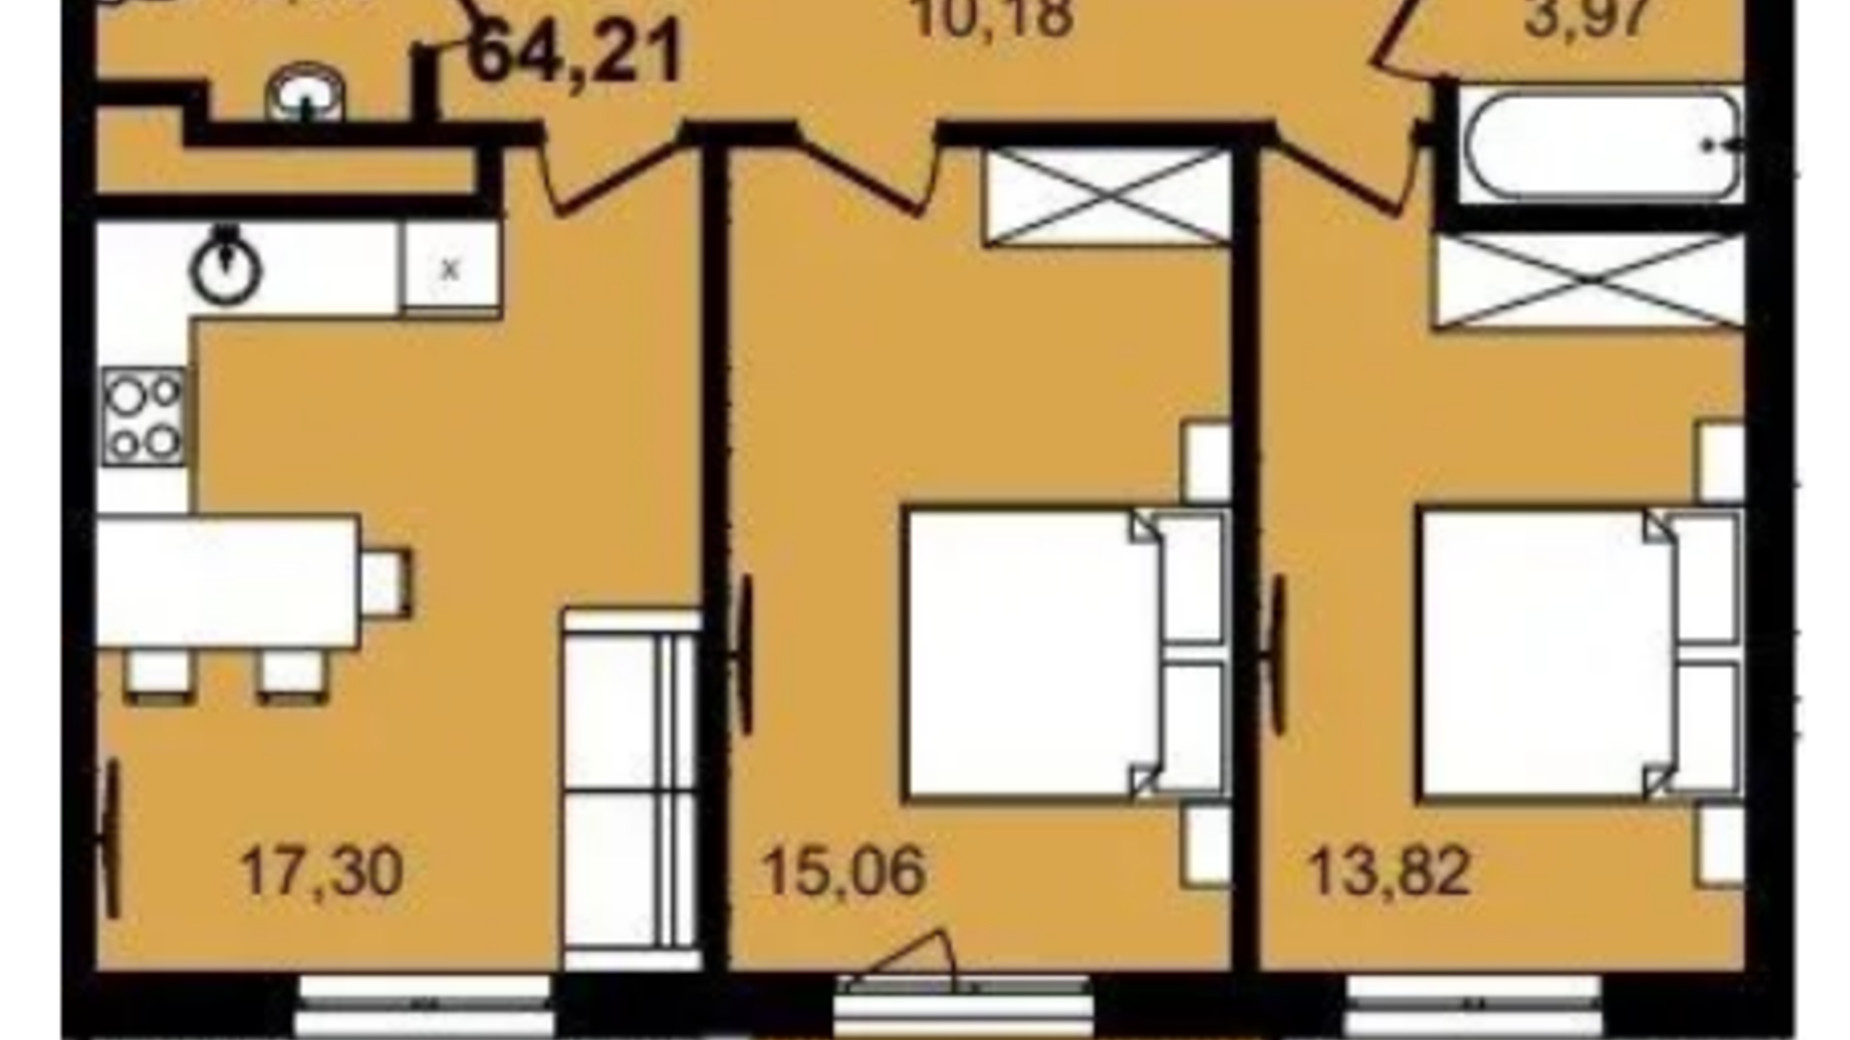 Планировка 2-комнатной квартиры в ЖК Infinity Park 64.21 м², фото 630791